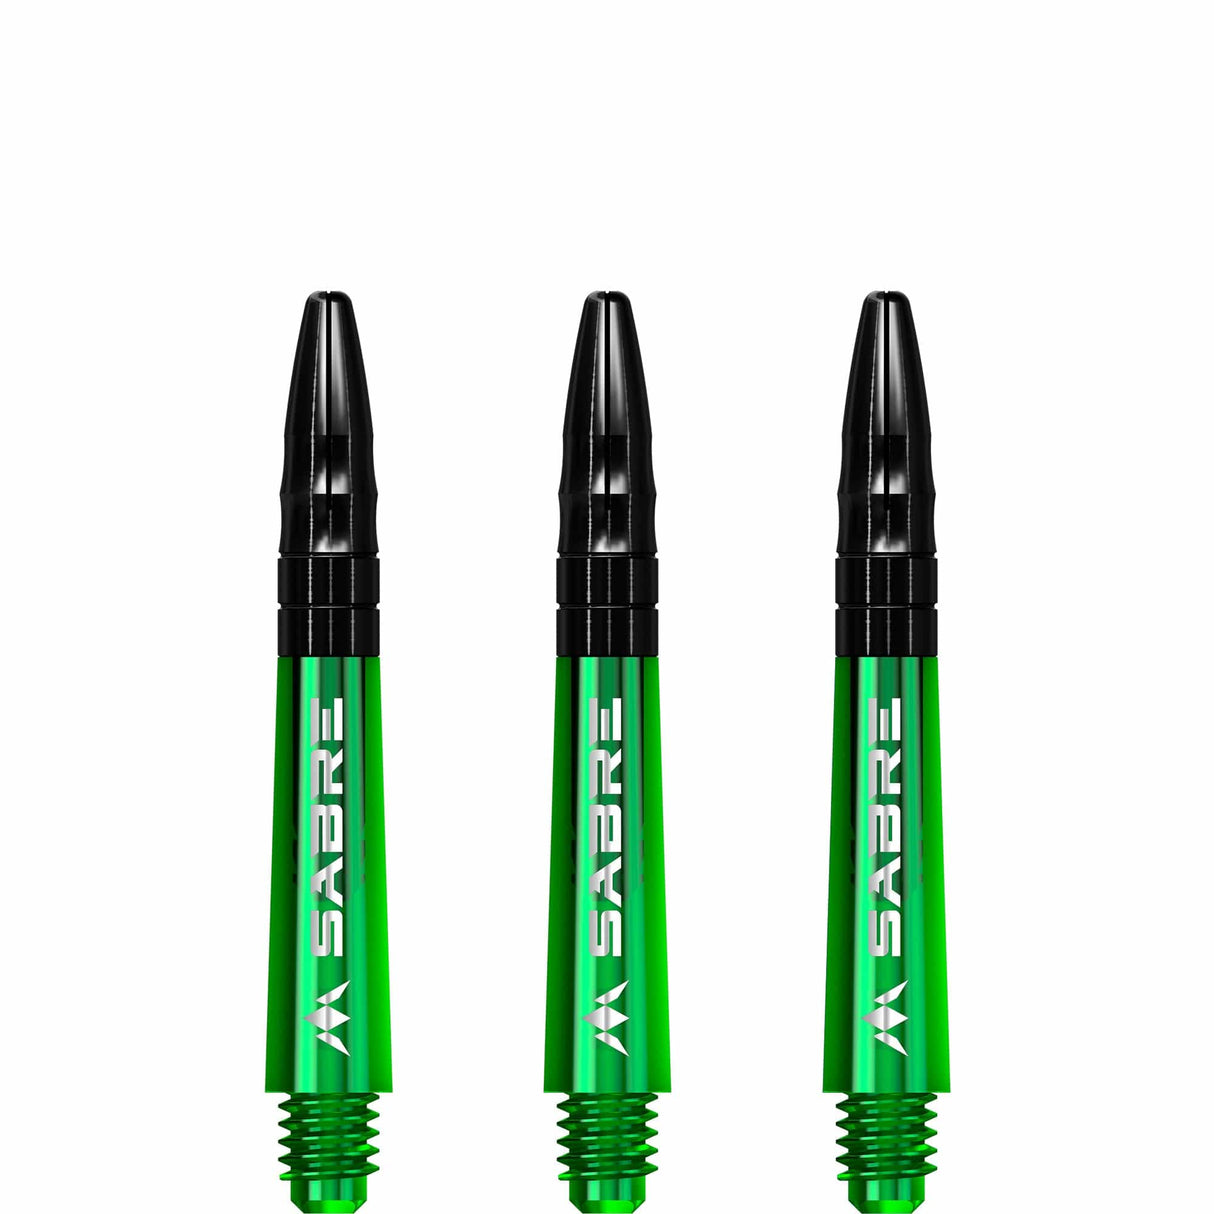 Mission Sabre Shafts - Polycarbonate Dart Stems - Green - Black Top Short